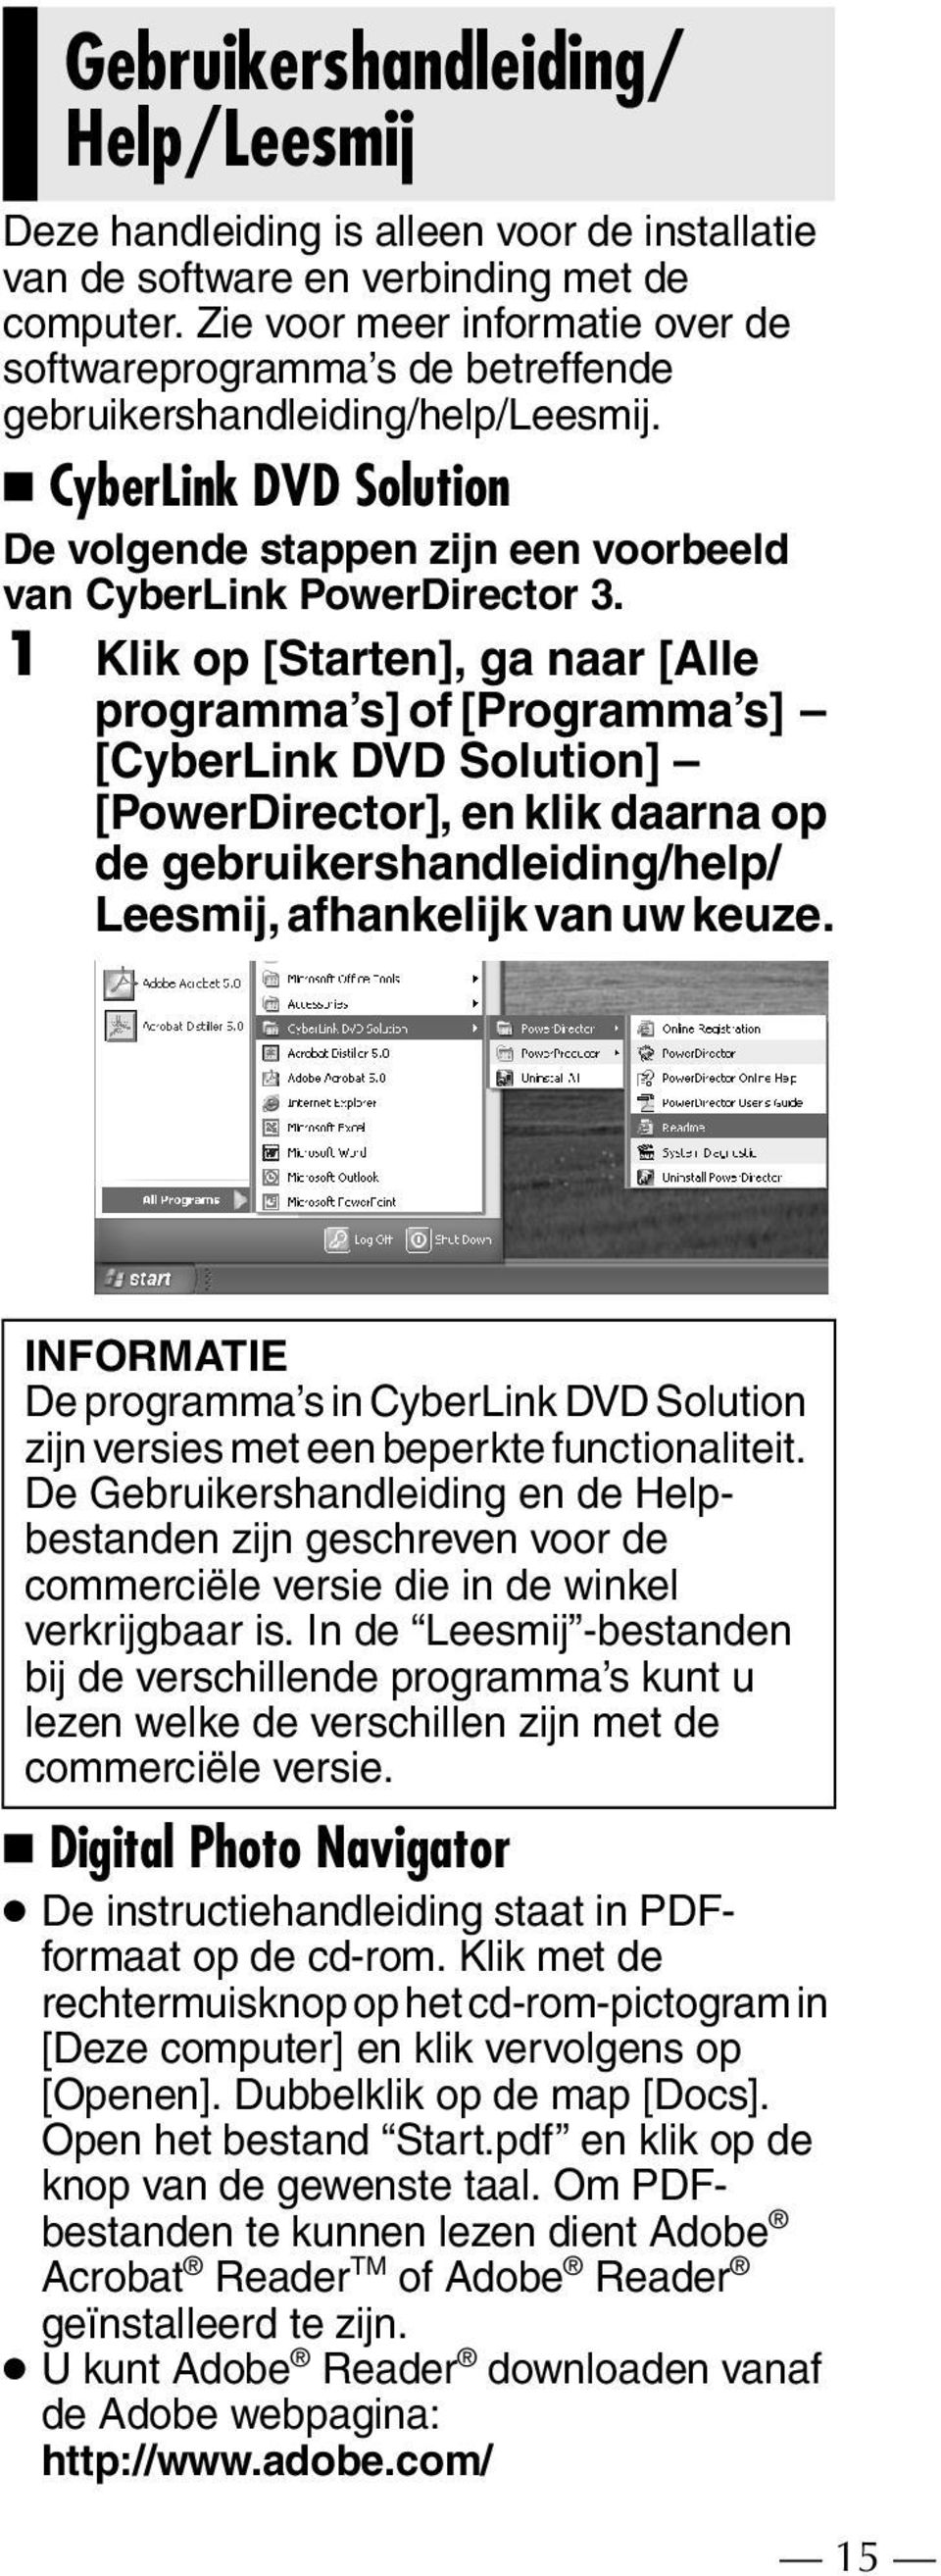 1 Klik op [Starten], ga naar [Alle programma s] of [Programma s] [CyberLink DVD Solution] [PowerDirector], en klik daarna op de gebruikershandleiding/help/ Leesmij, afhankelijk van uw keuze.